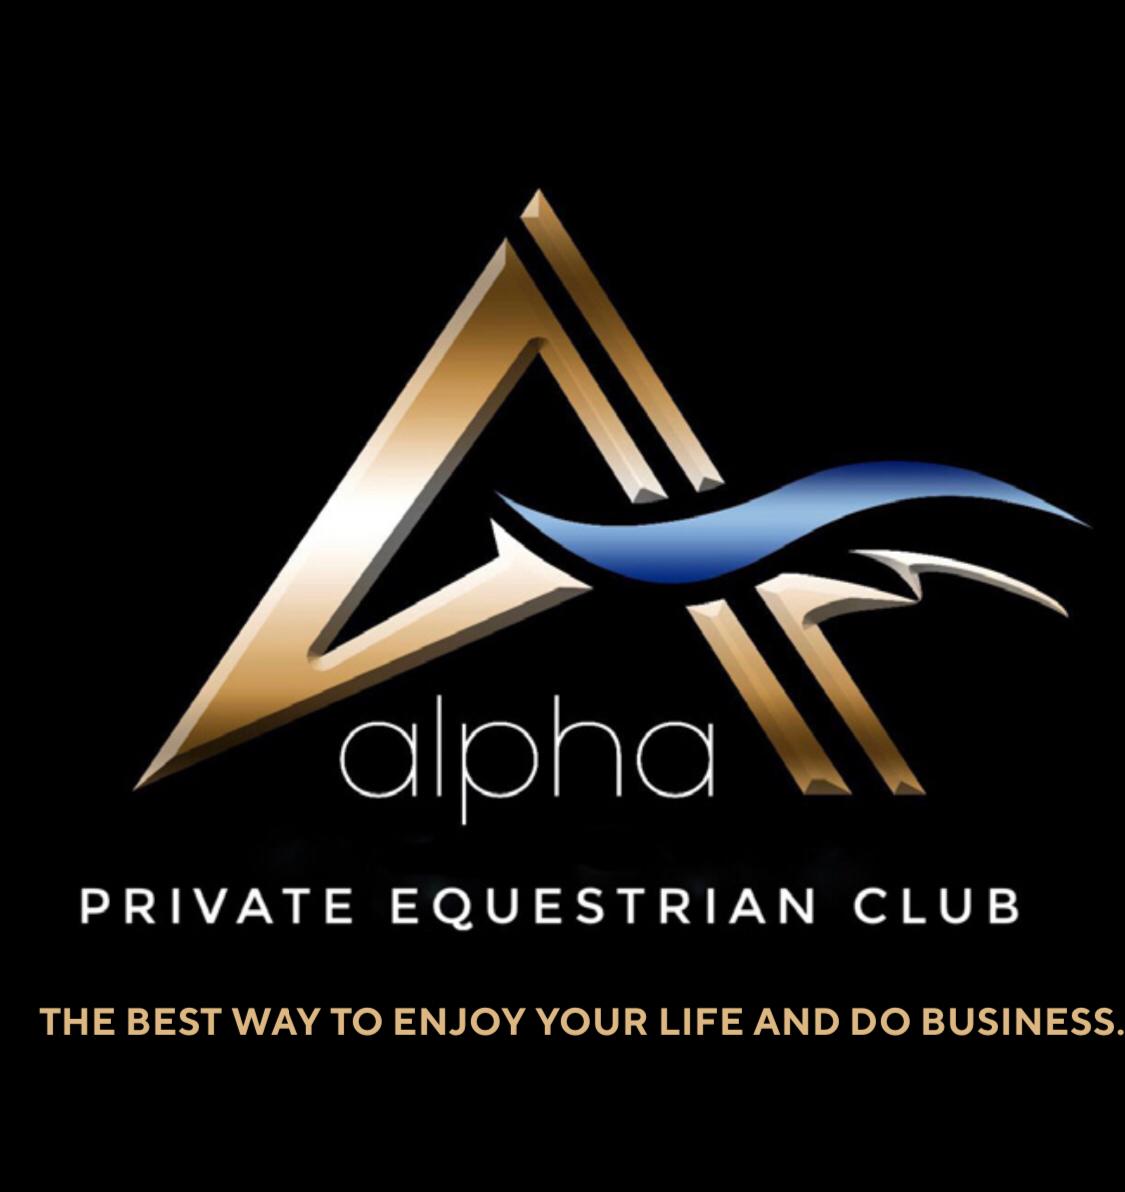 Alpha Private Equestrian Club, a nova “conta” da Jequitibá Comunicação Estratégica